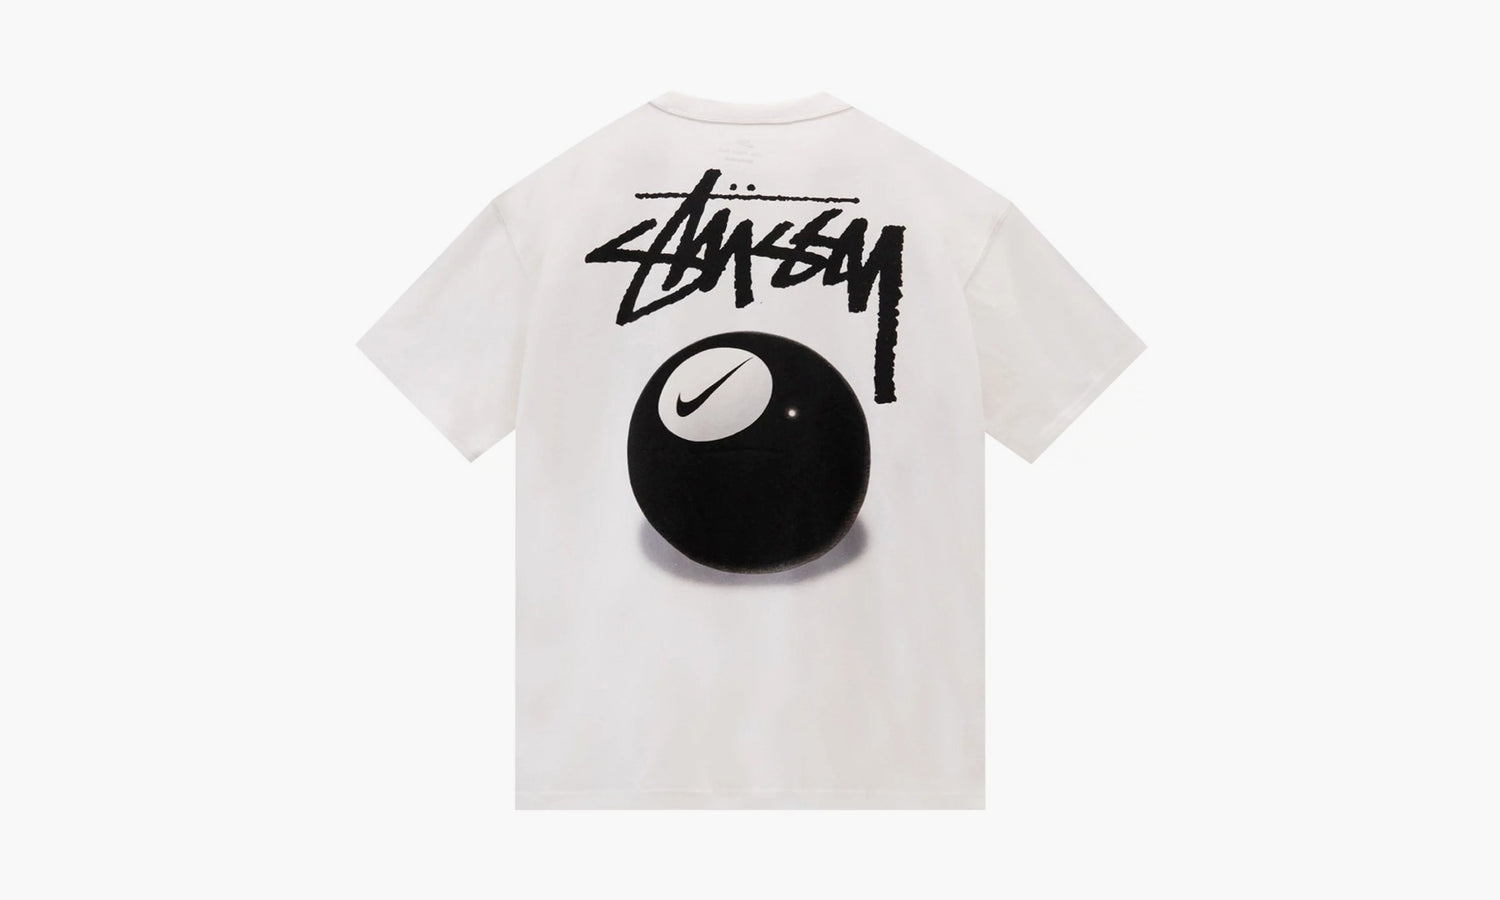 Nike x Stussy 8 Ball T-shirt “Multi” - DO9323 100 | Grailshop